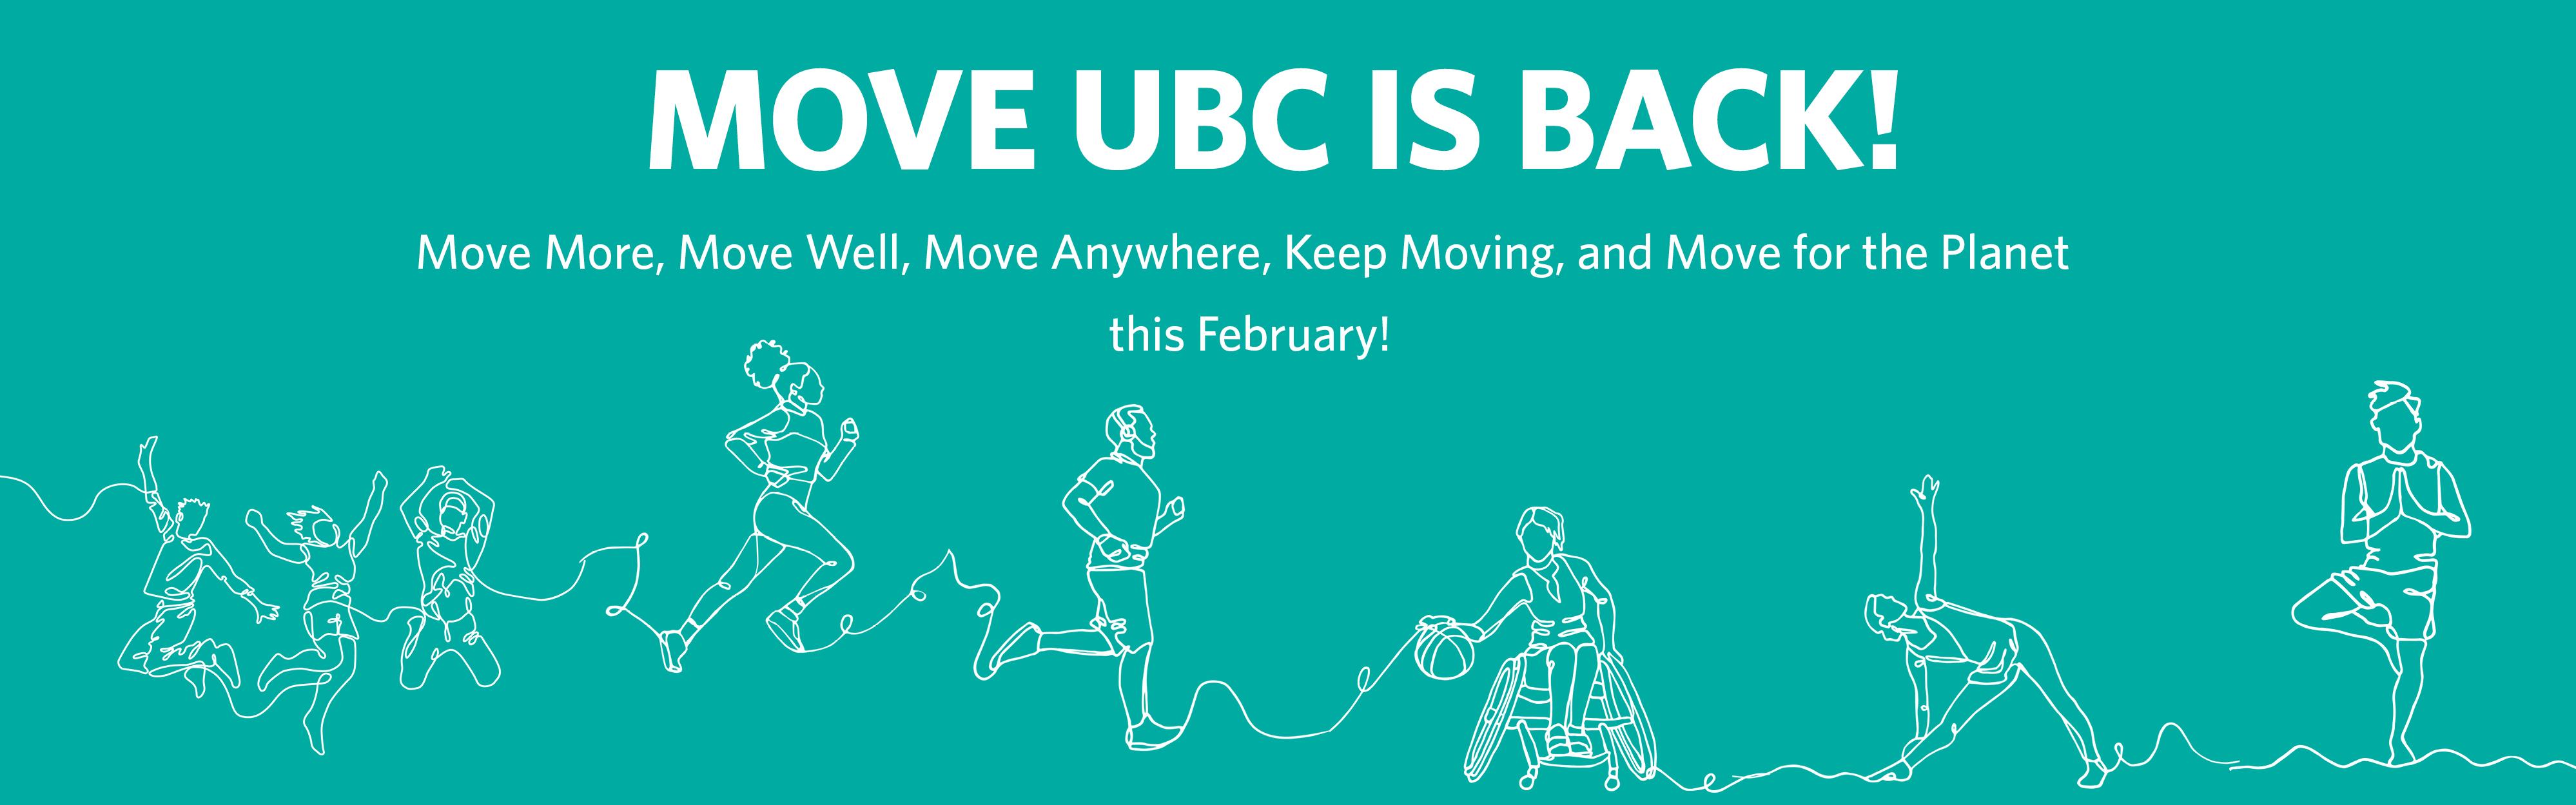 Move UBC